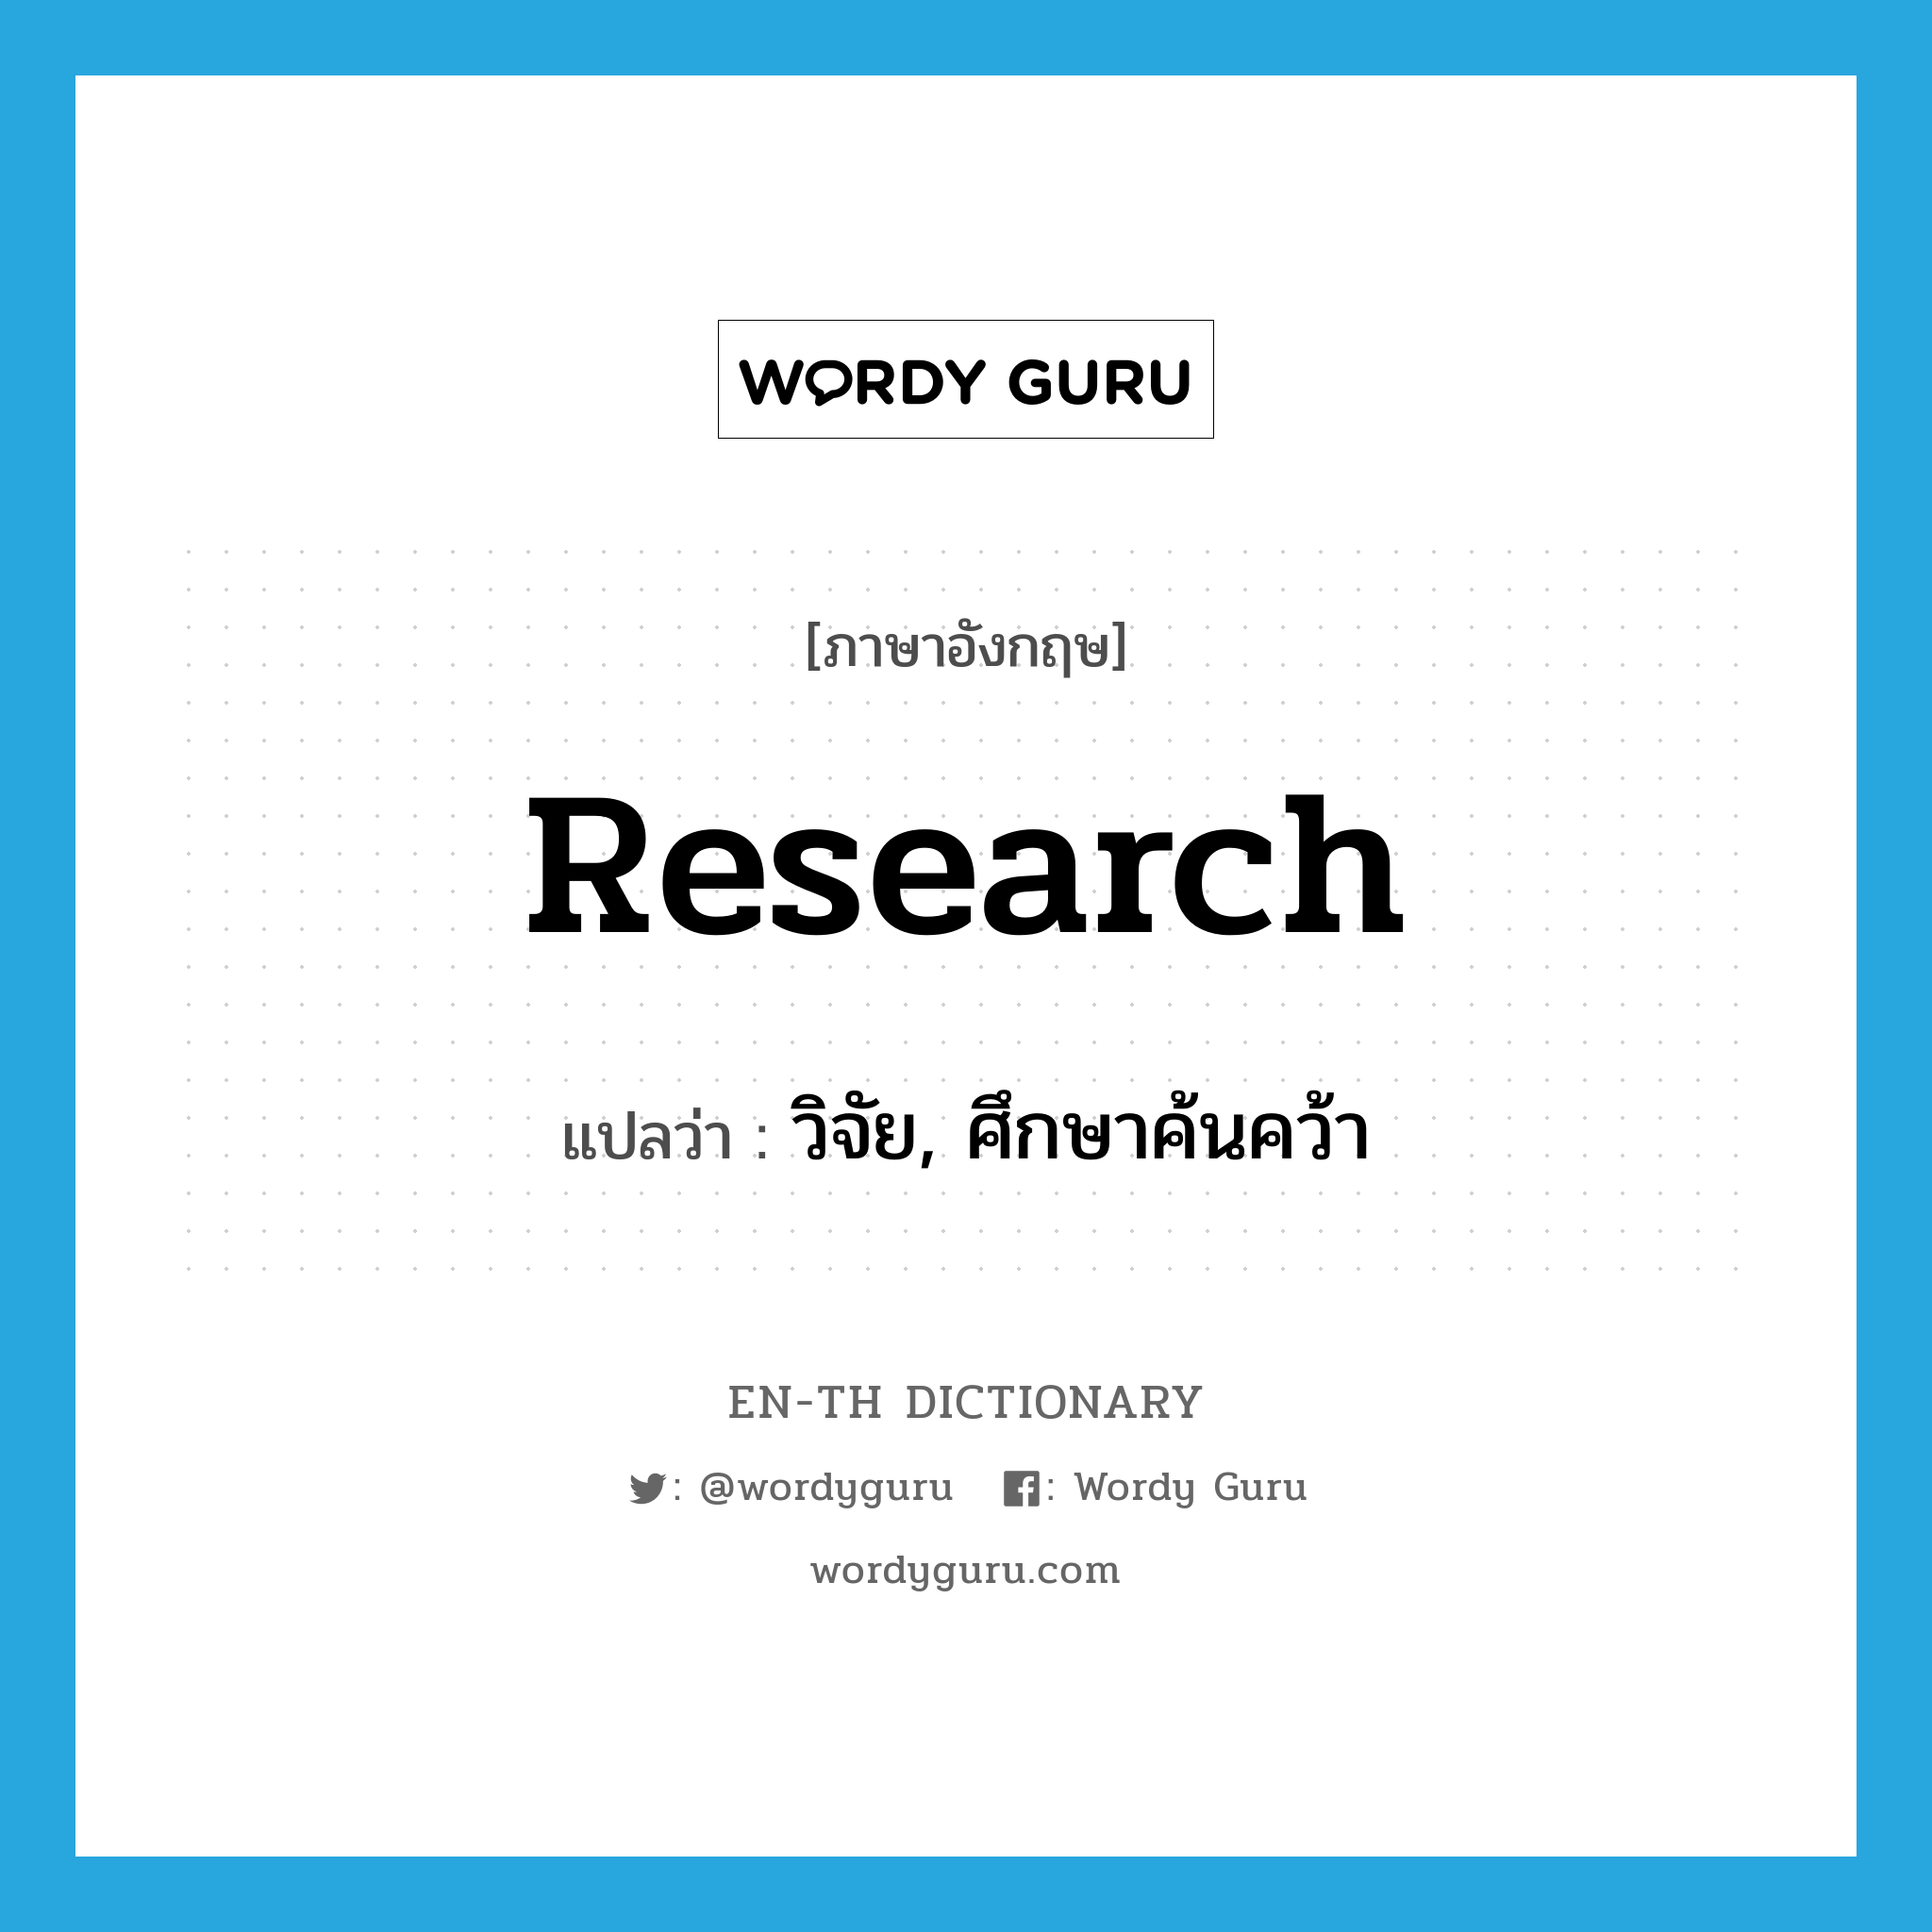 research แปลว่า?, คำศัพท์ภาษาอังกฤษ research แปลว่า วิจัย, ศึกษาค้นคว้า ประเภท VI หมวด VI